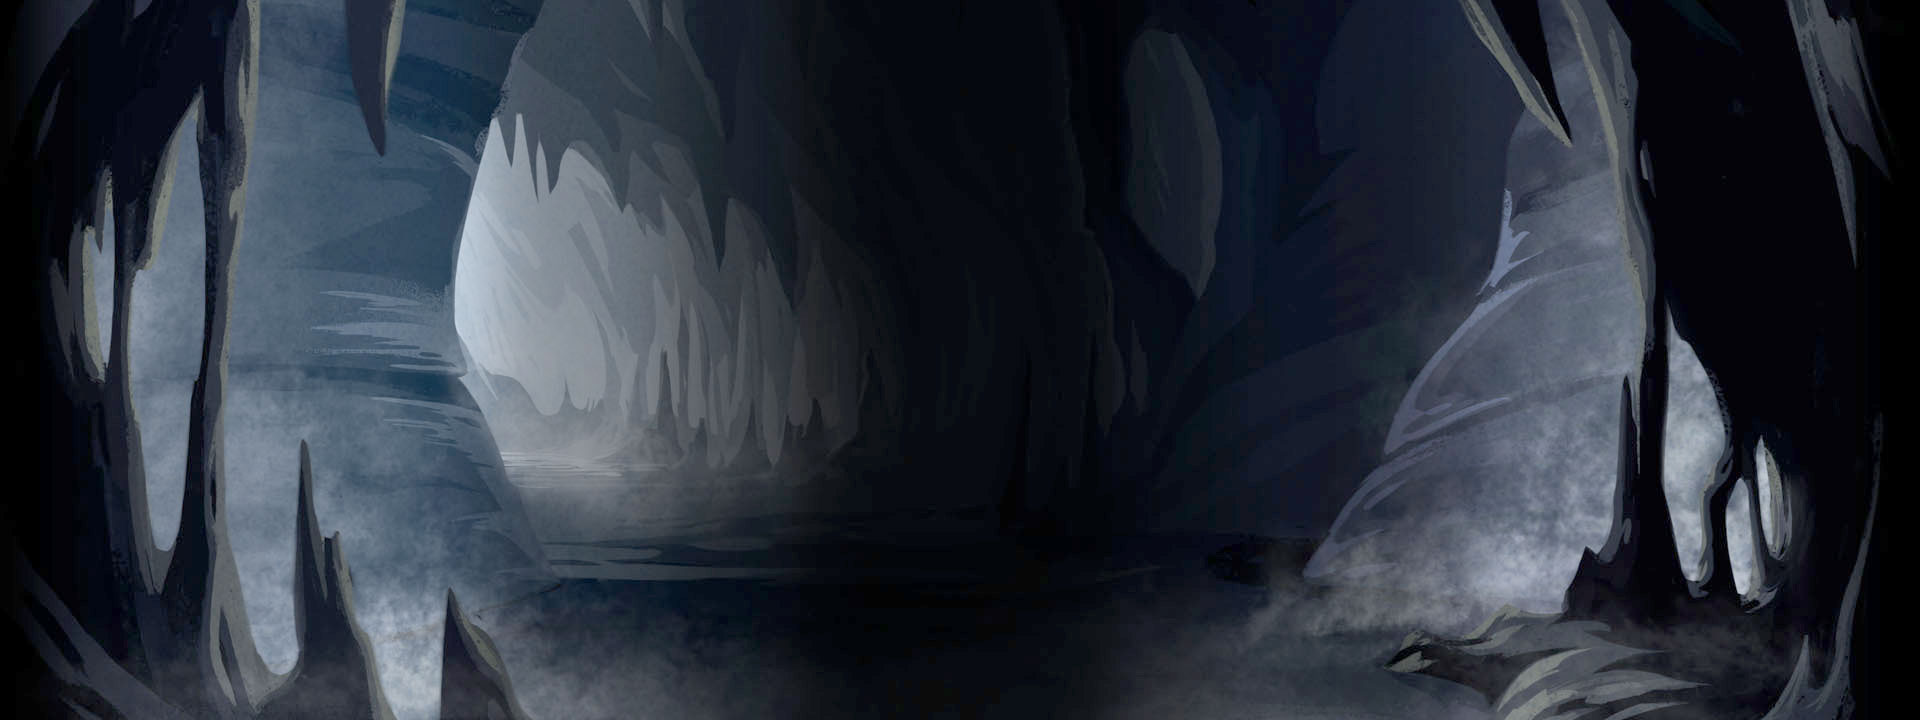 Imagem do podcast TESTE 5 do RPG Next - Ilustração de caverna escura